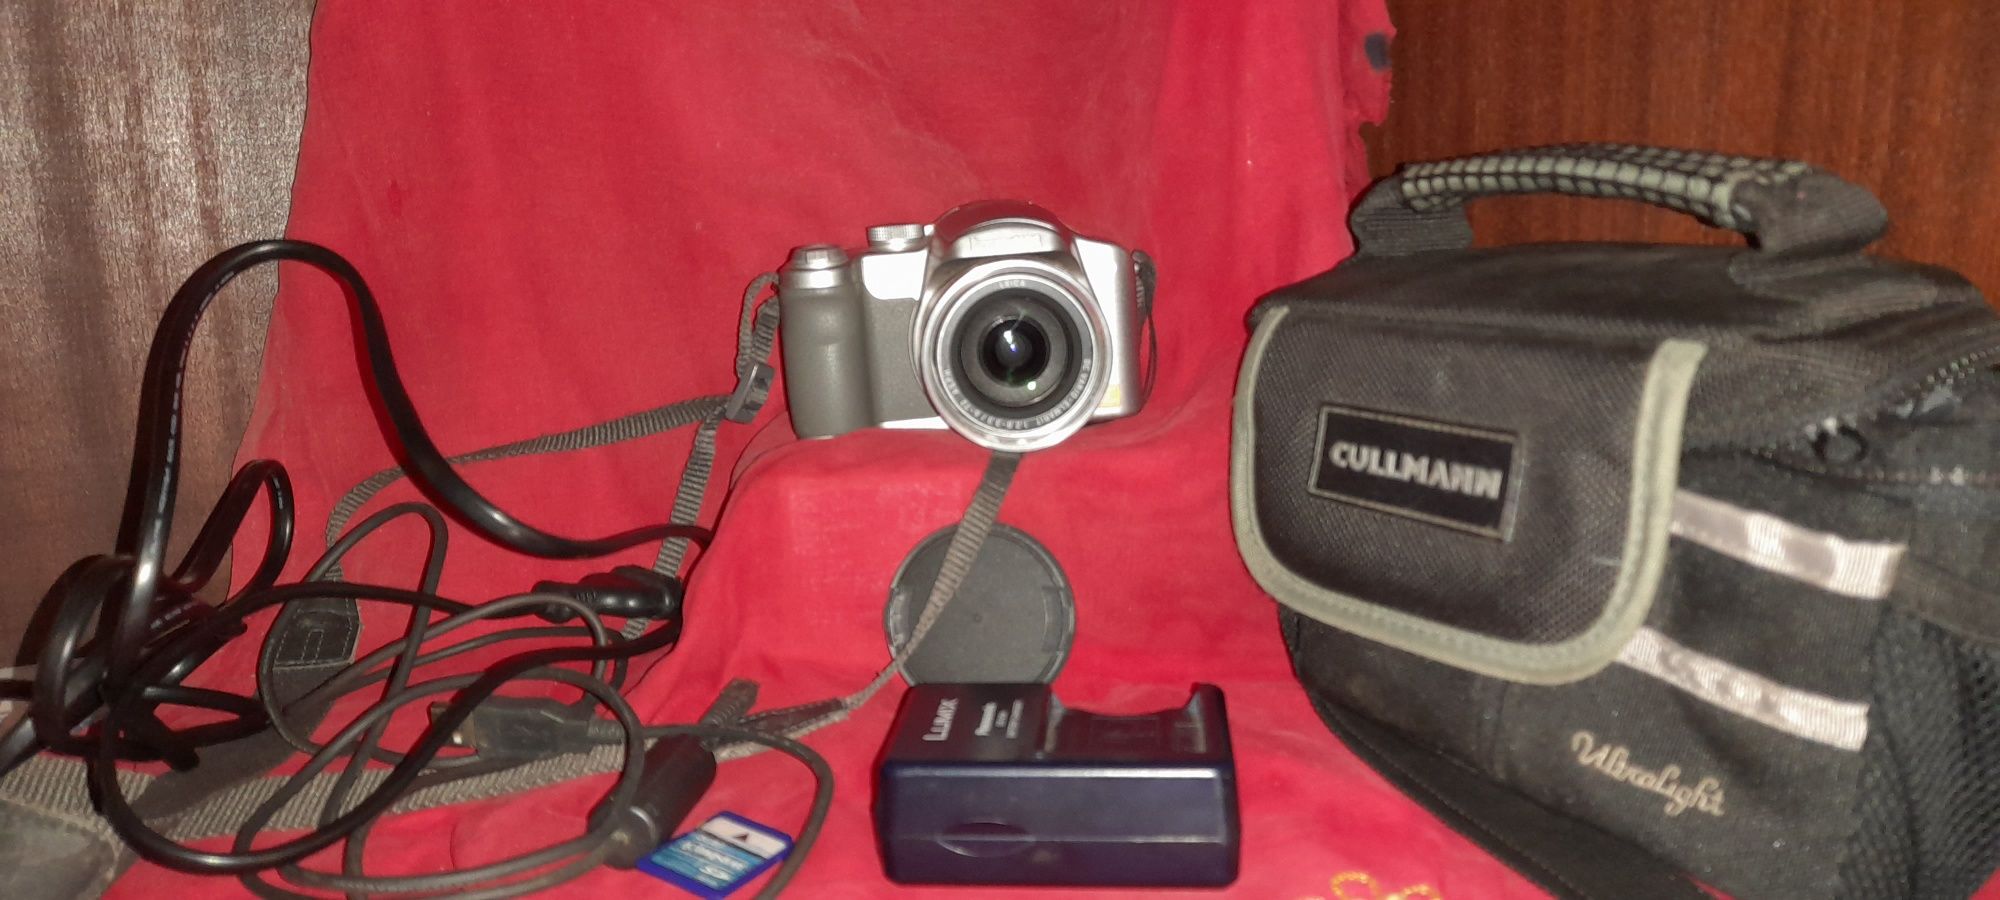 Câmera fotográfica Panasonic Lumix DMC-FZ7